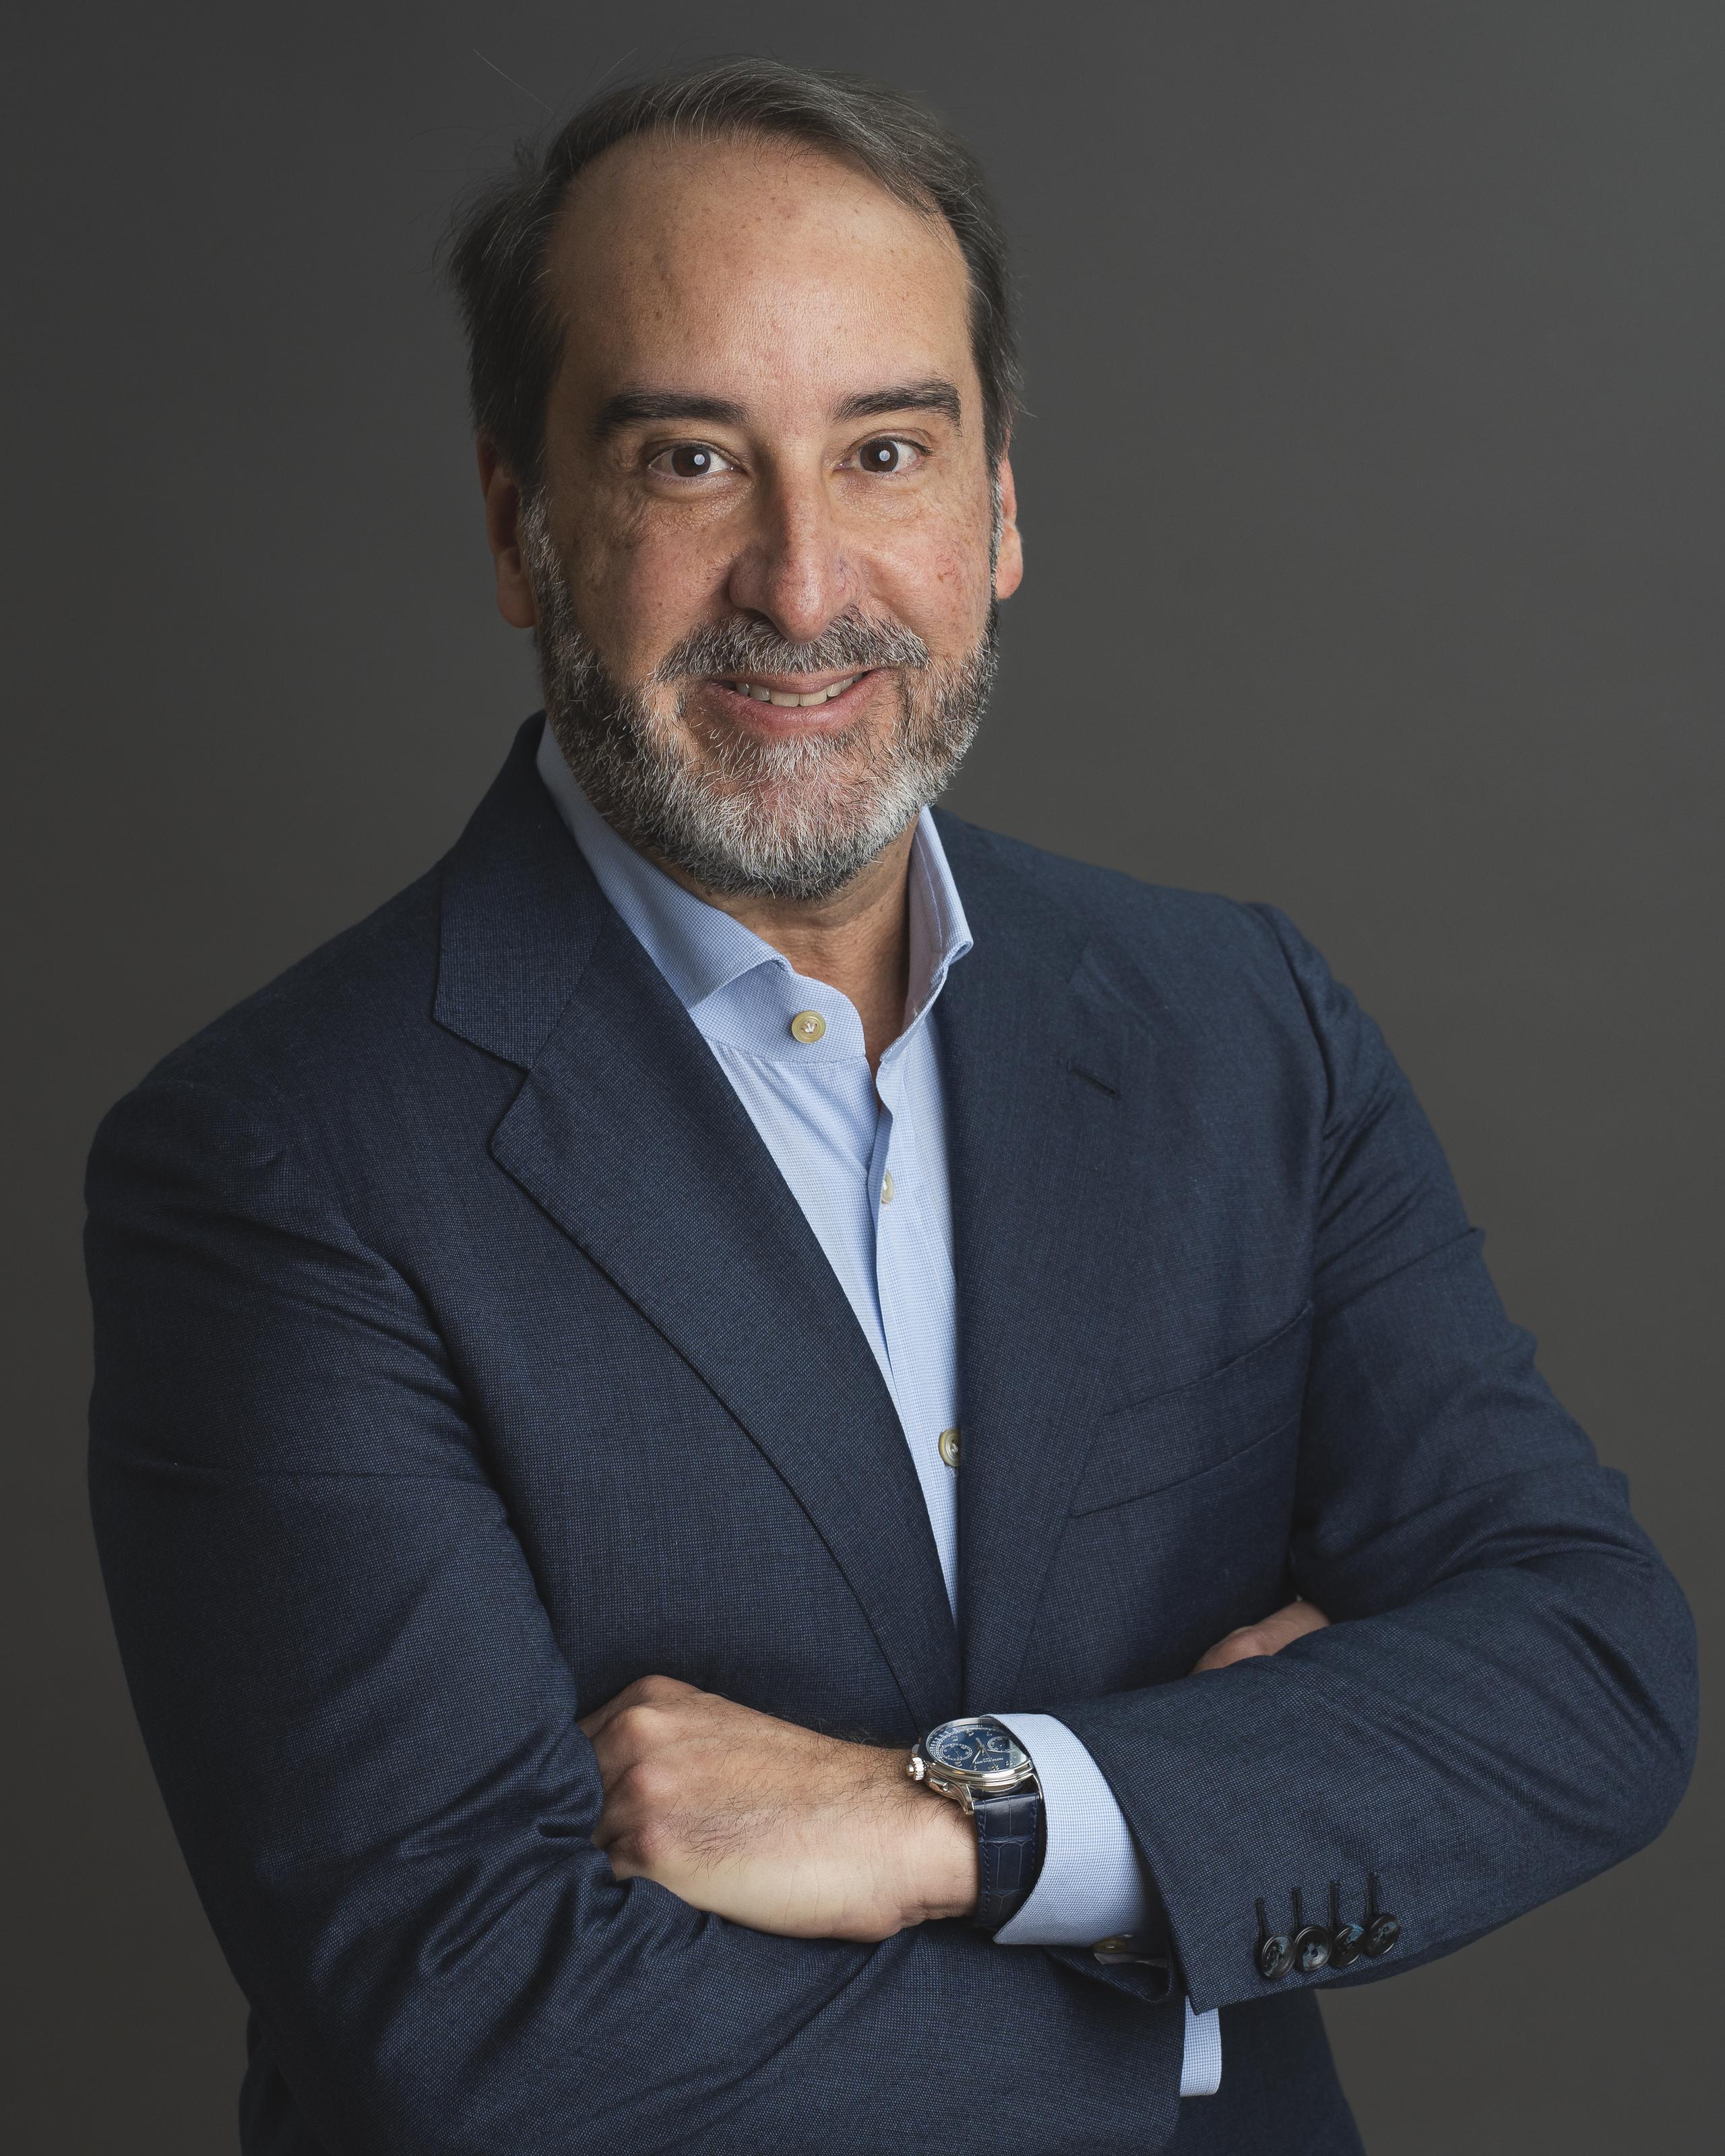 Jorge Colón Gerena,
Presidente y CEO